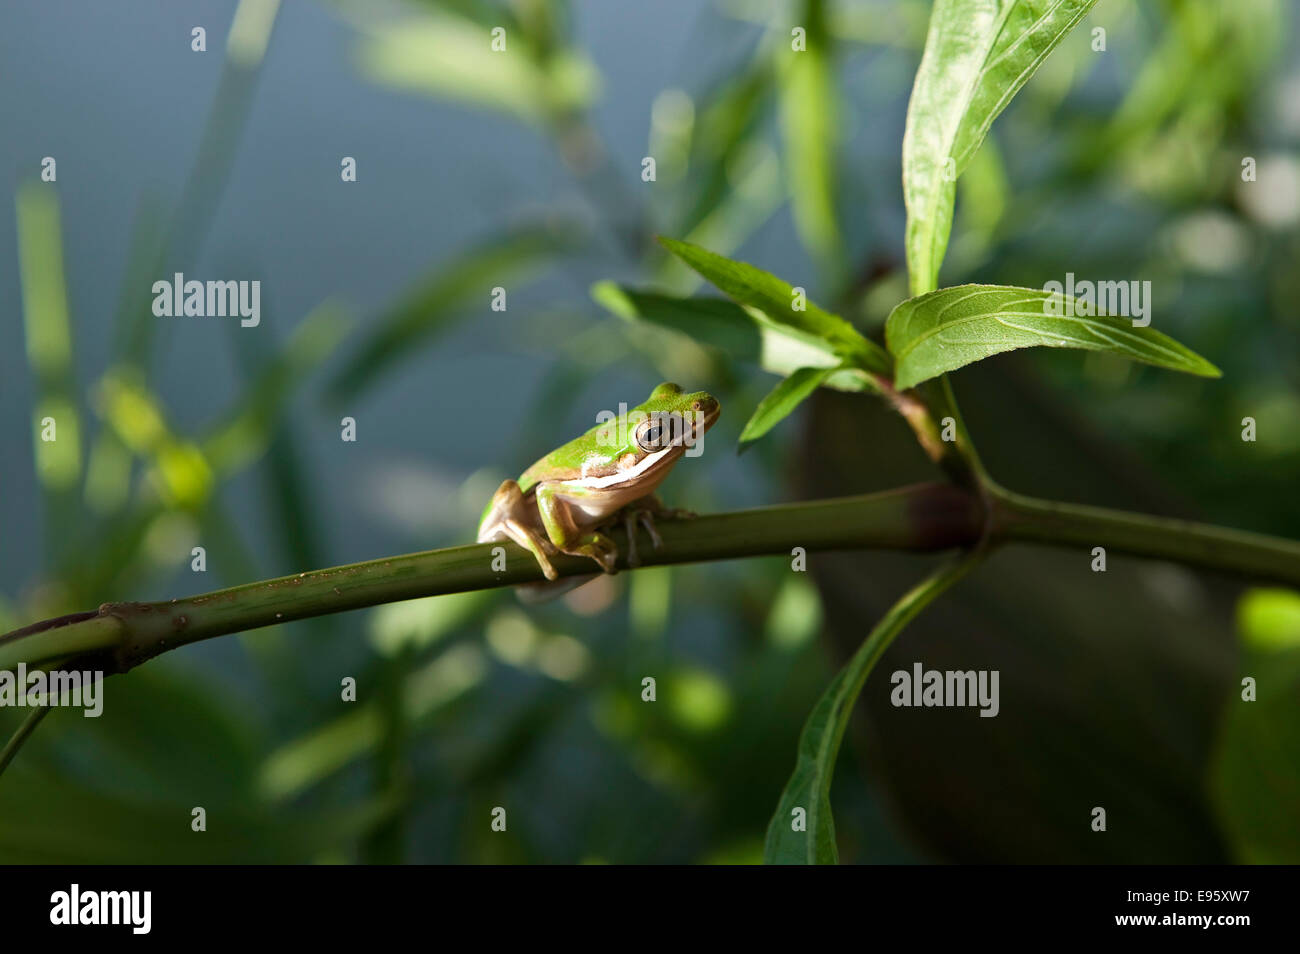 American Green Tree Frog (Hyla cinerea) seduta su gambo di petunia messicana di fronte ai lati con visualizzazione di pancia bianca, Florida, USA. Foto Stock